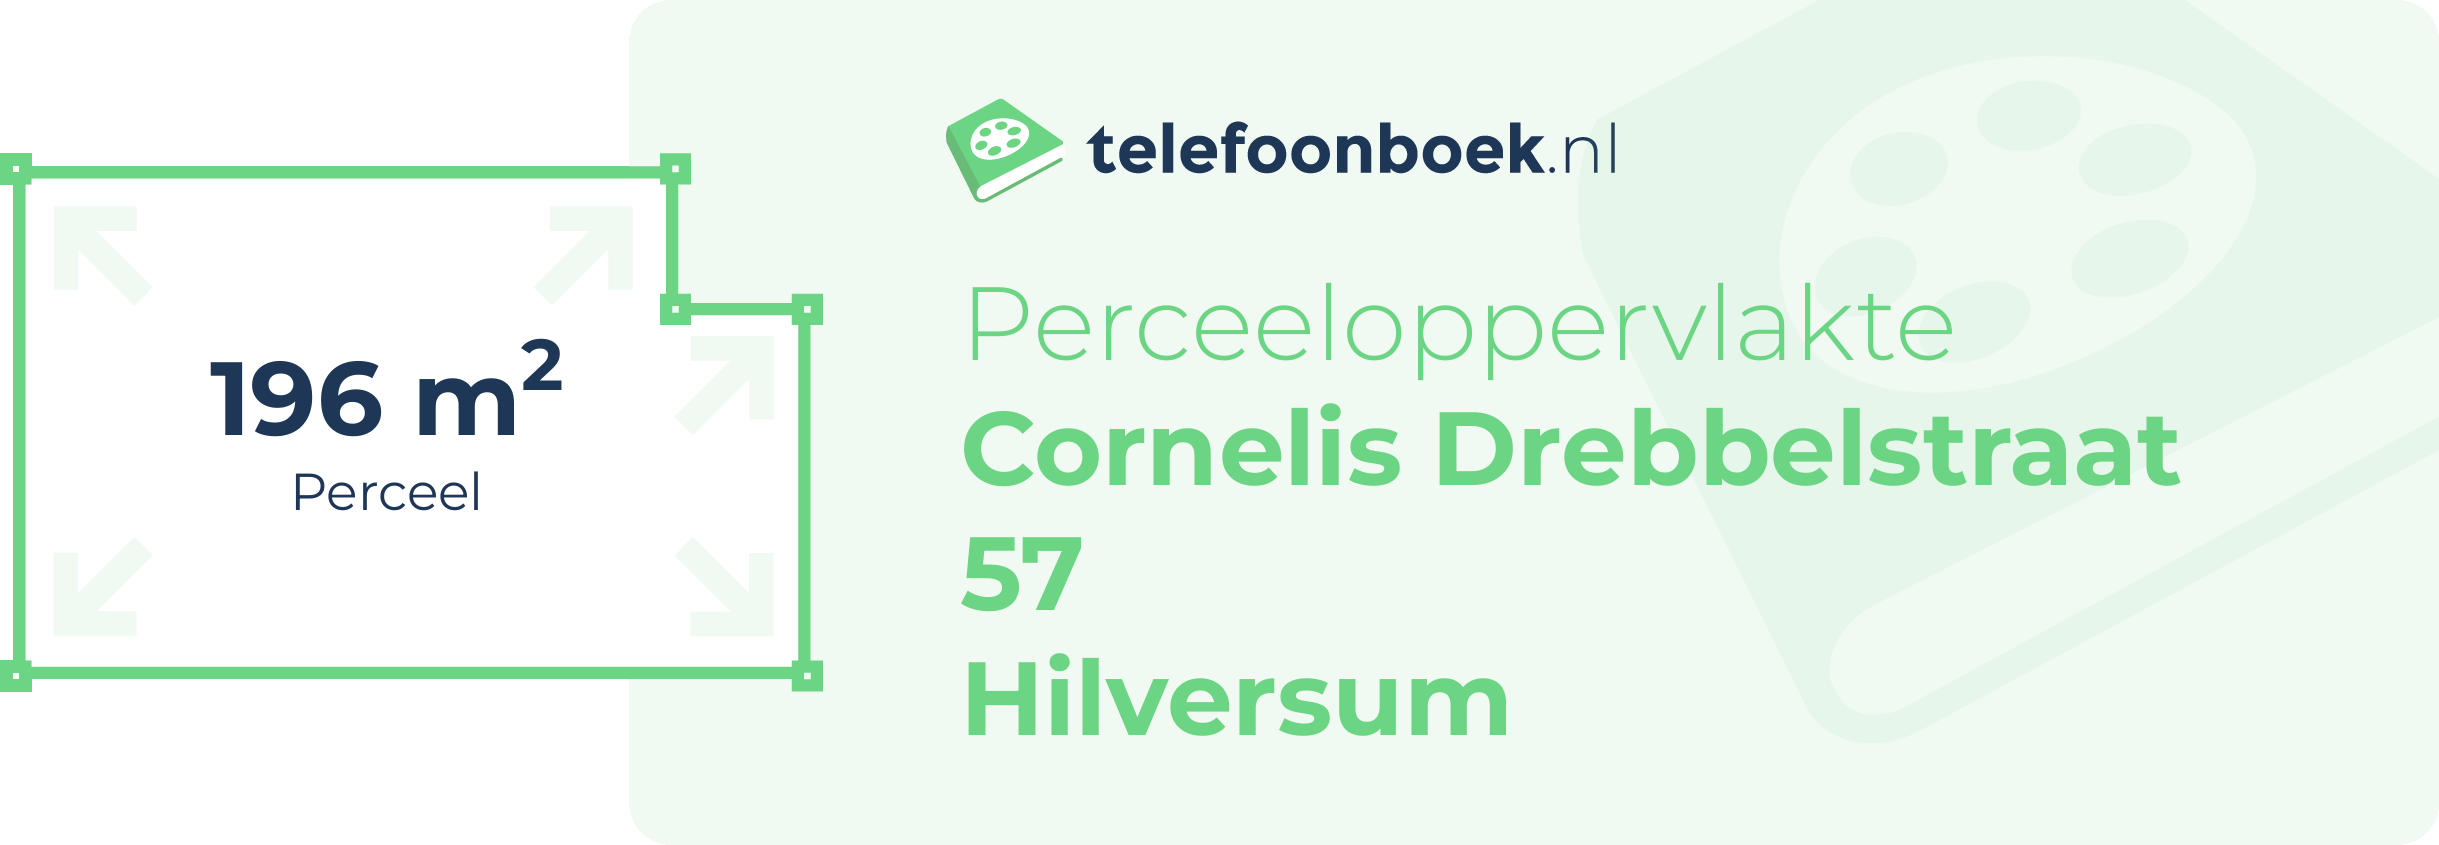 Perceeloppervlakte Cornelis Drebbelstraat 57 Hilversum